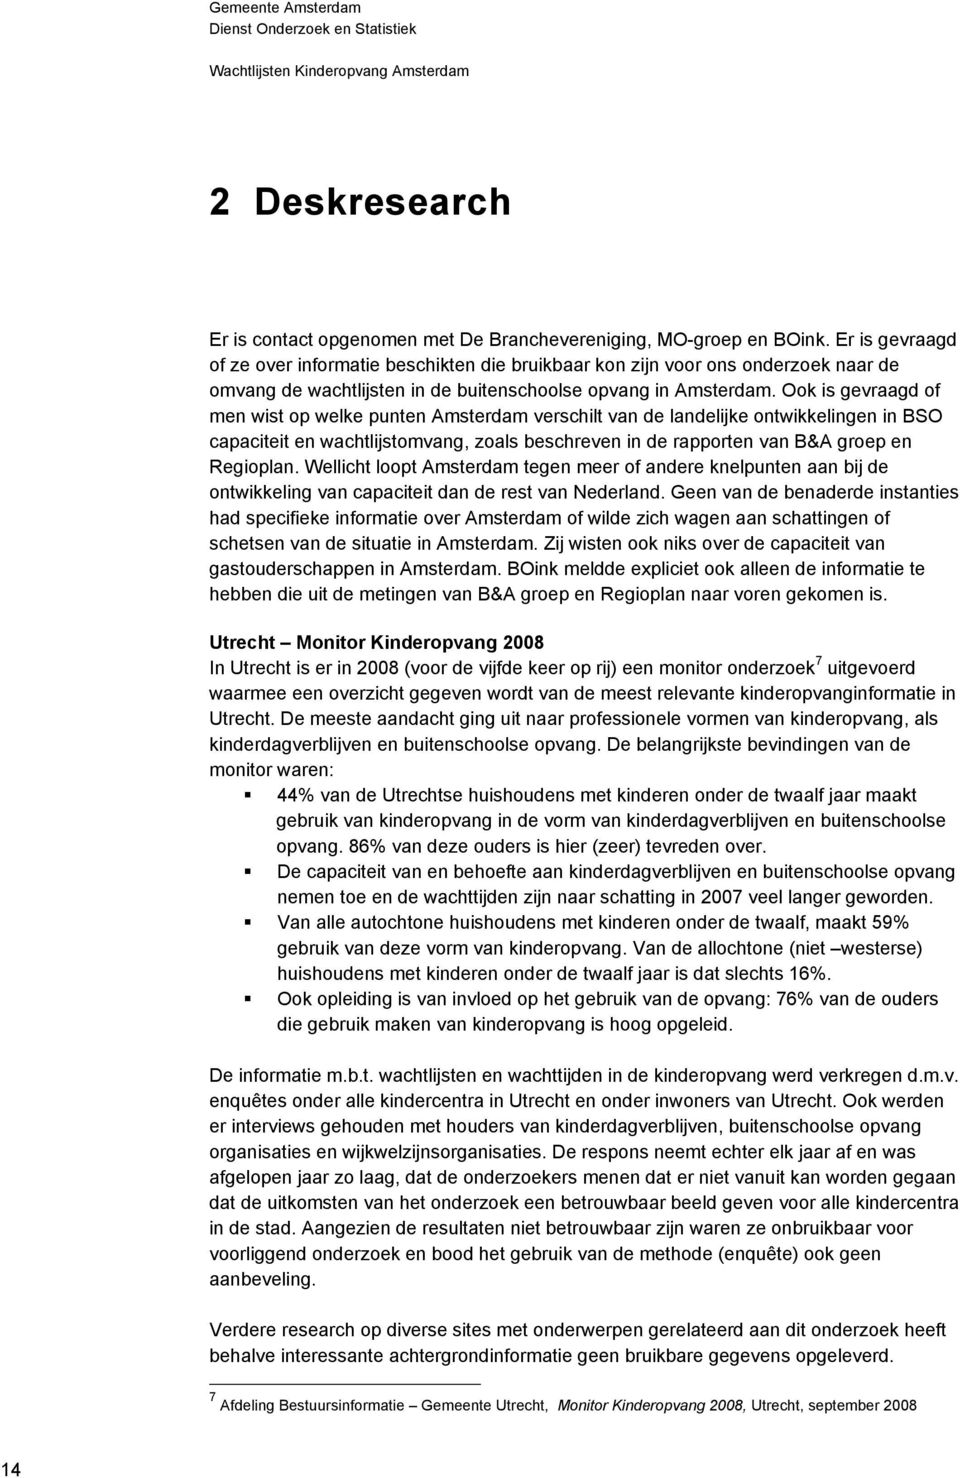 Ook is gevraagd of men wist op welke punten Amsterdam verschilt van de landelijke ontwikkelingen in BSO capaciteit en wachtlijstomvang, zoals beschreven in de rapporten van B&A groep en Regioplan.